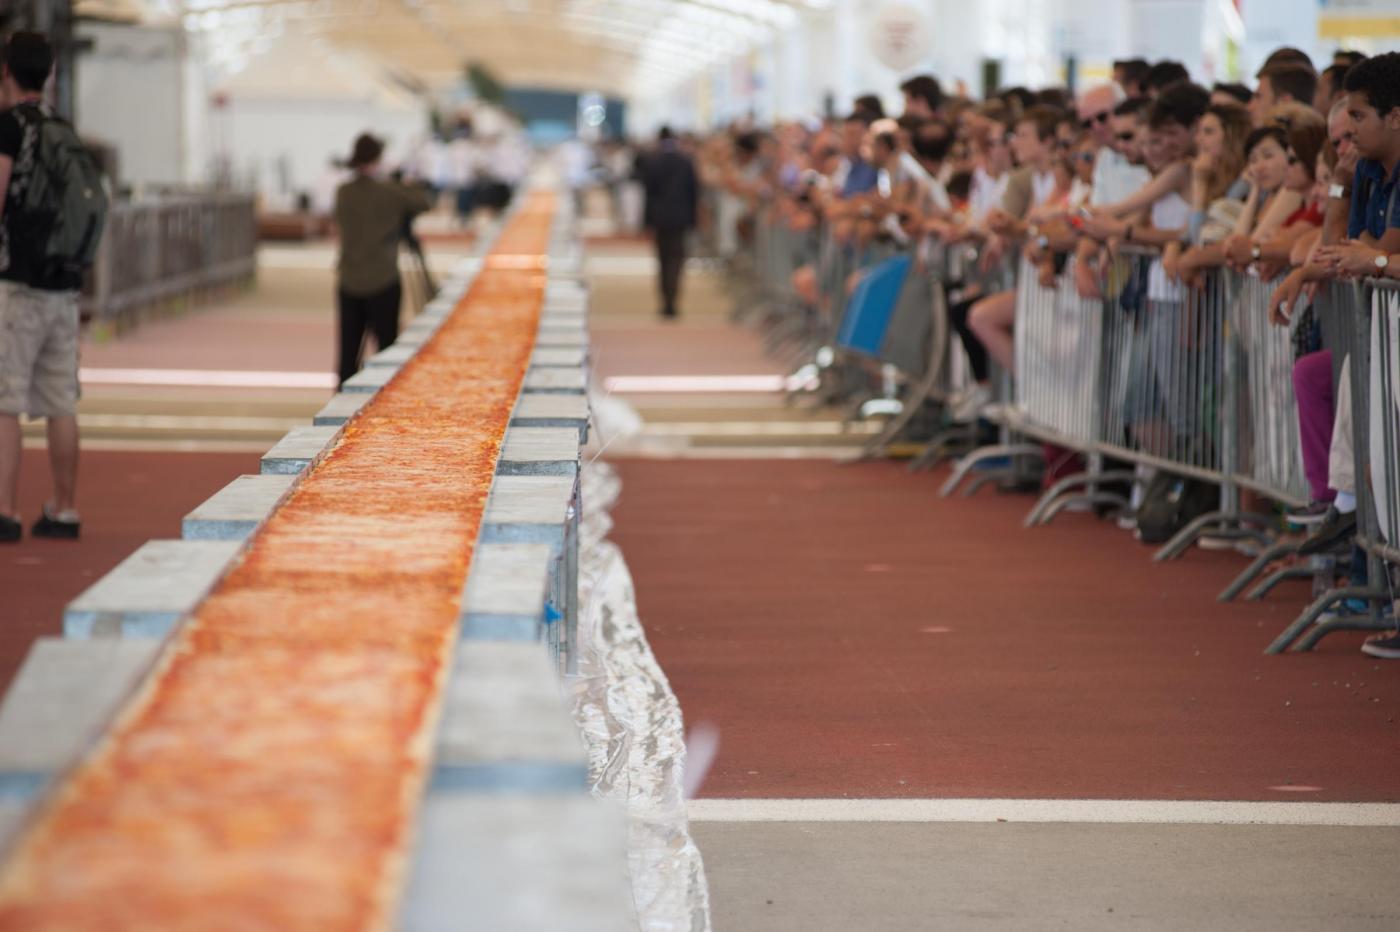 A Napoli la pizza più lunga del mondo per entrare nel Guinness dei primati